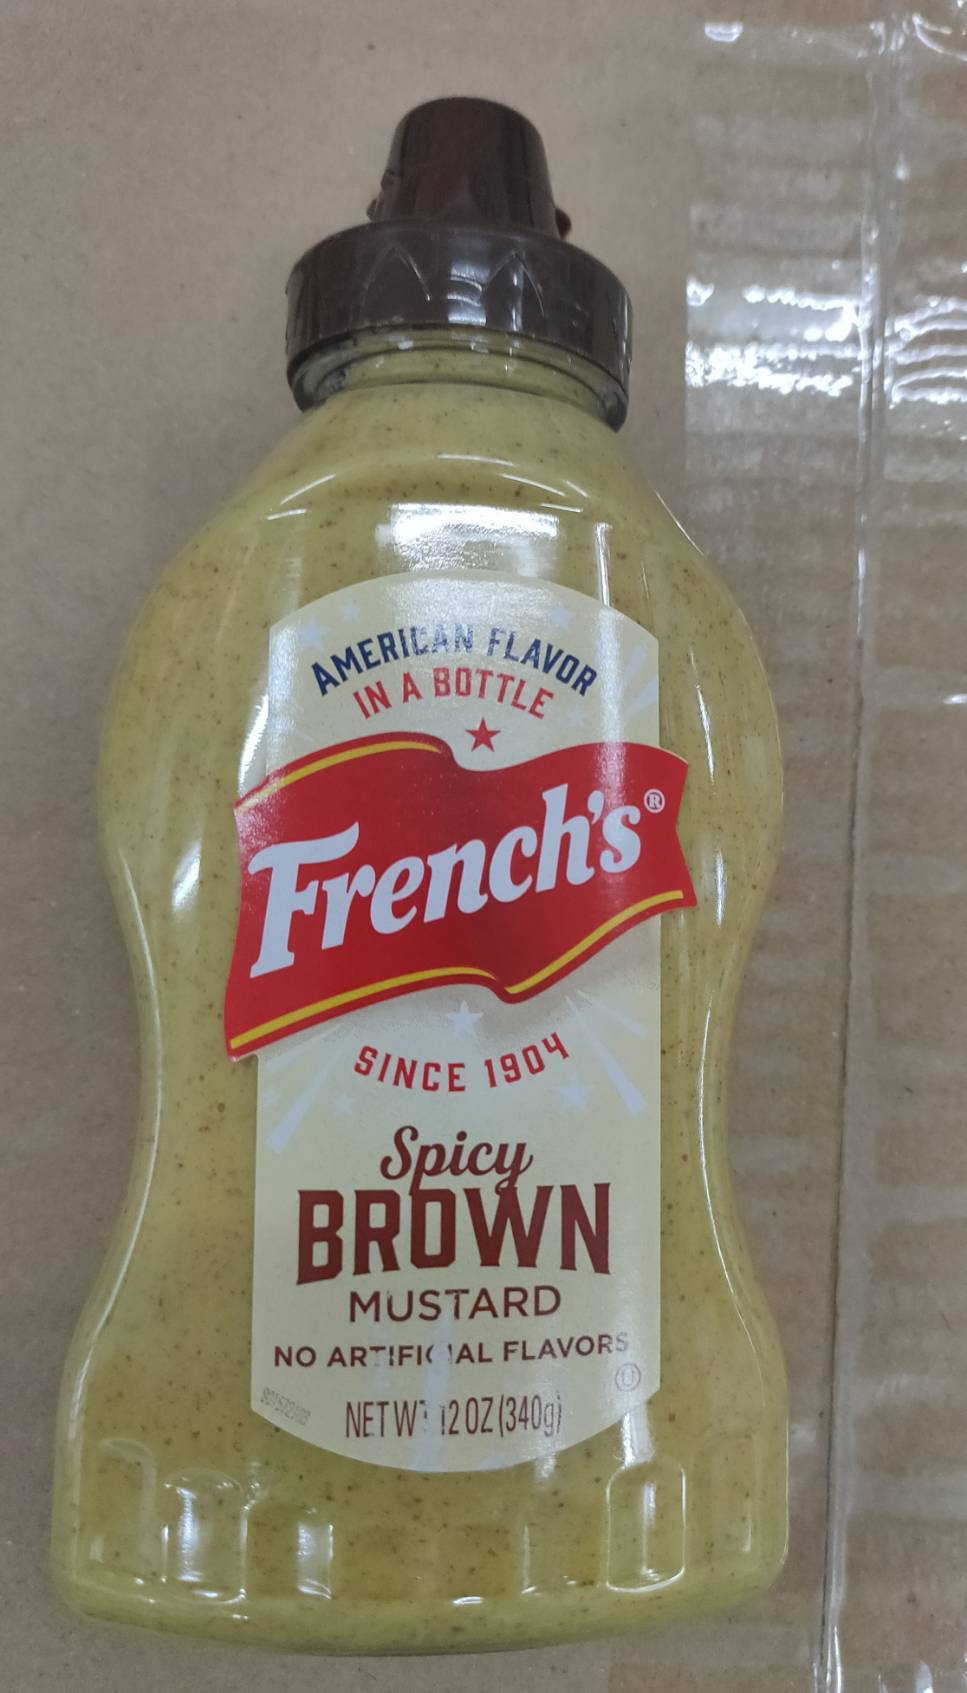 เฟร้นช์ สไปร์ซี่ บราวน์ มัสตาร์ด ขวดบีบขนาด 340 กรัม ซอสมัสตาร์ดผสมครื่องทศ (French's Spicy Brown Mustard)